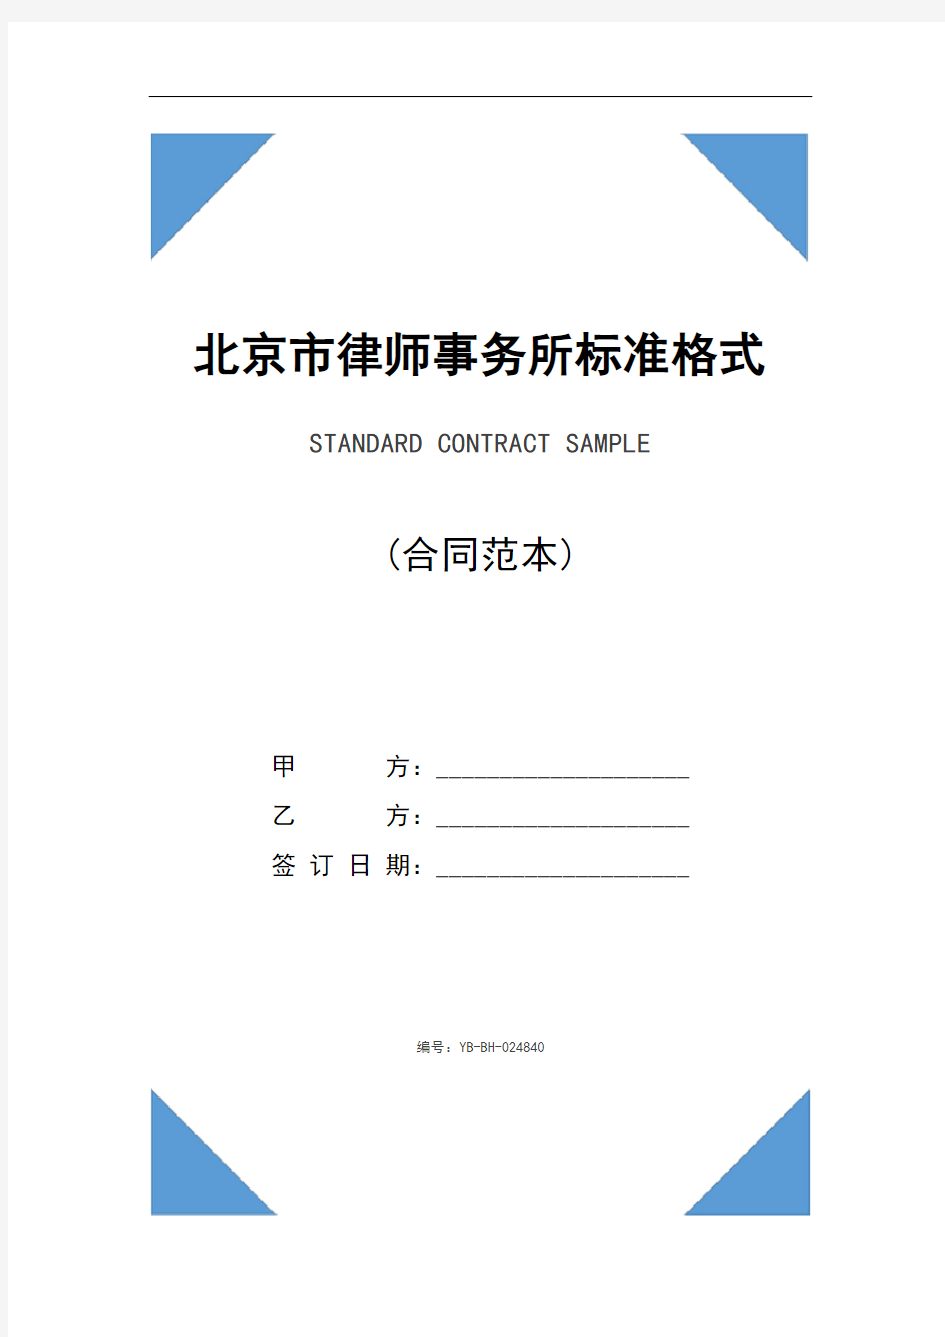 北京市律师事务所标准格式及必备条款(2020年)